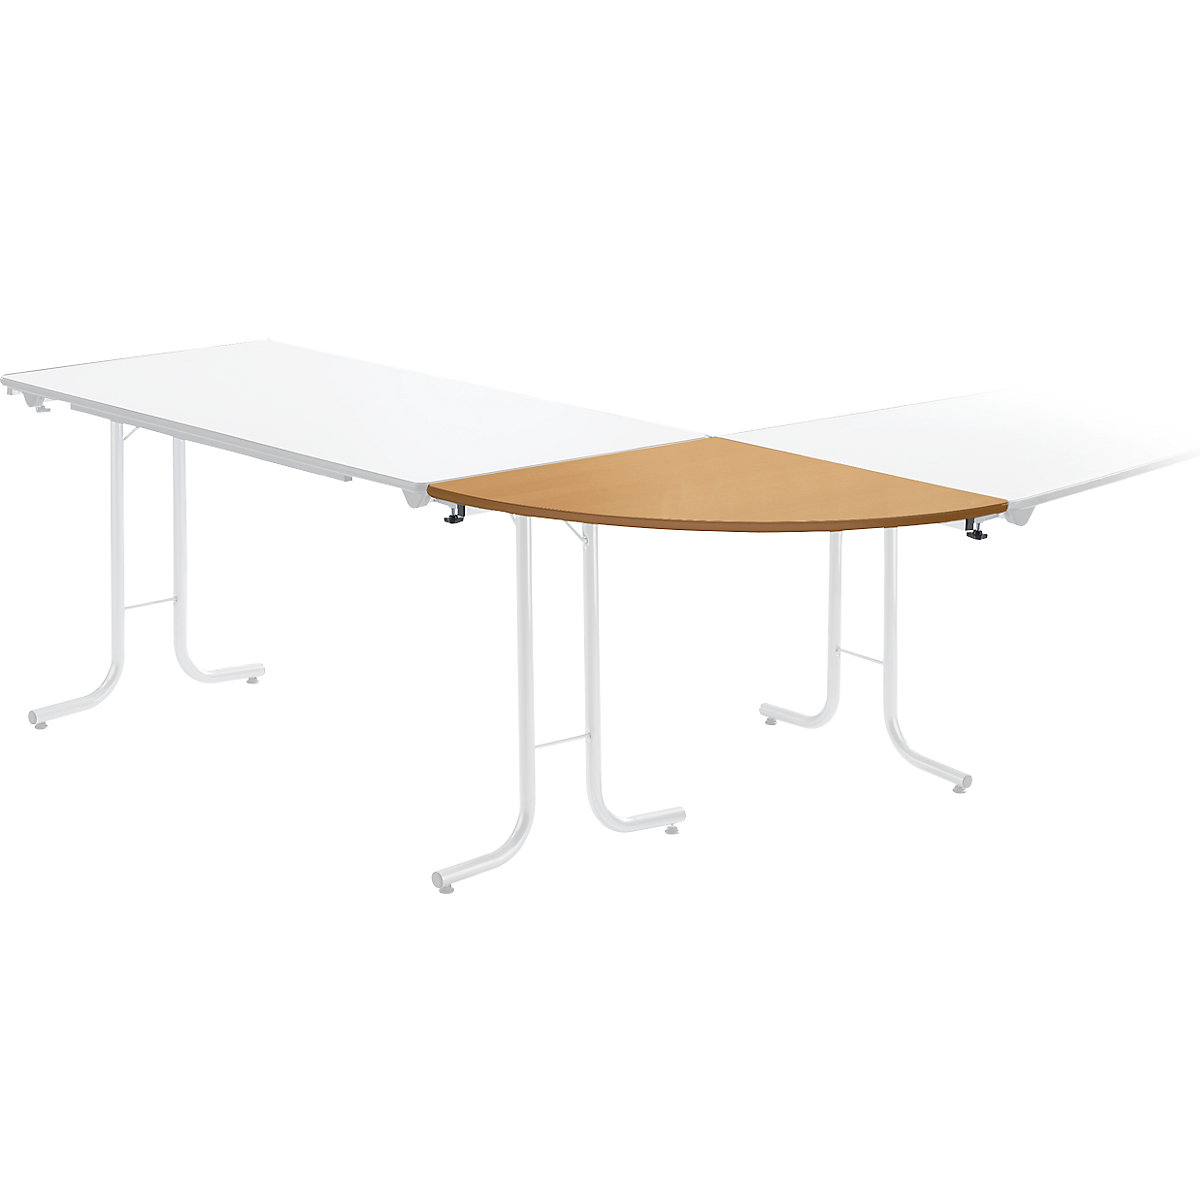 Aanbouwtafel bij inklapbare tafel, bladvorm kwartcirkel, 700 x 700 mm, frame aluminiumkleurig, blad beukenhoutdecor-4